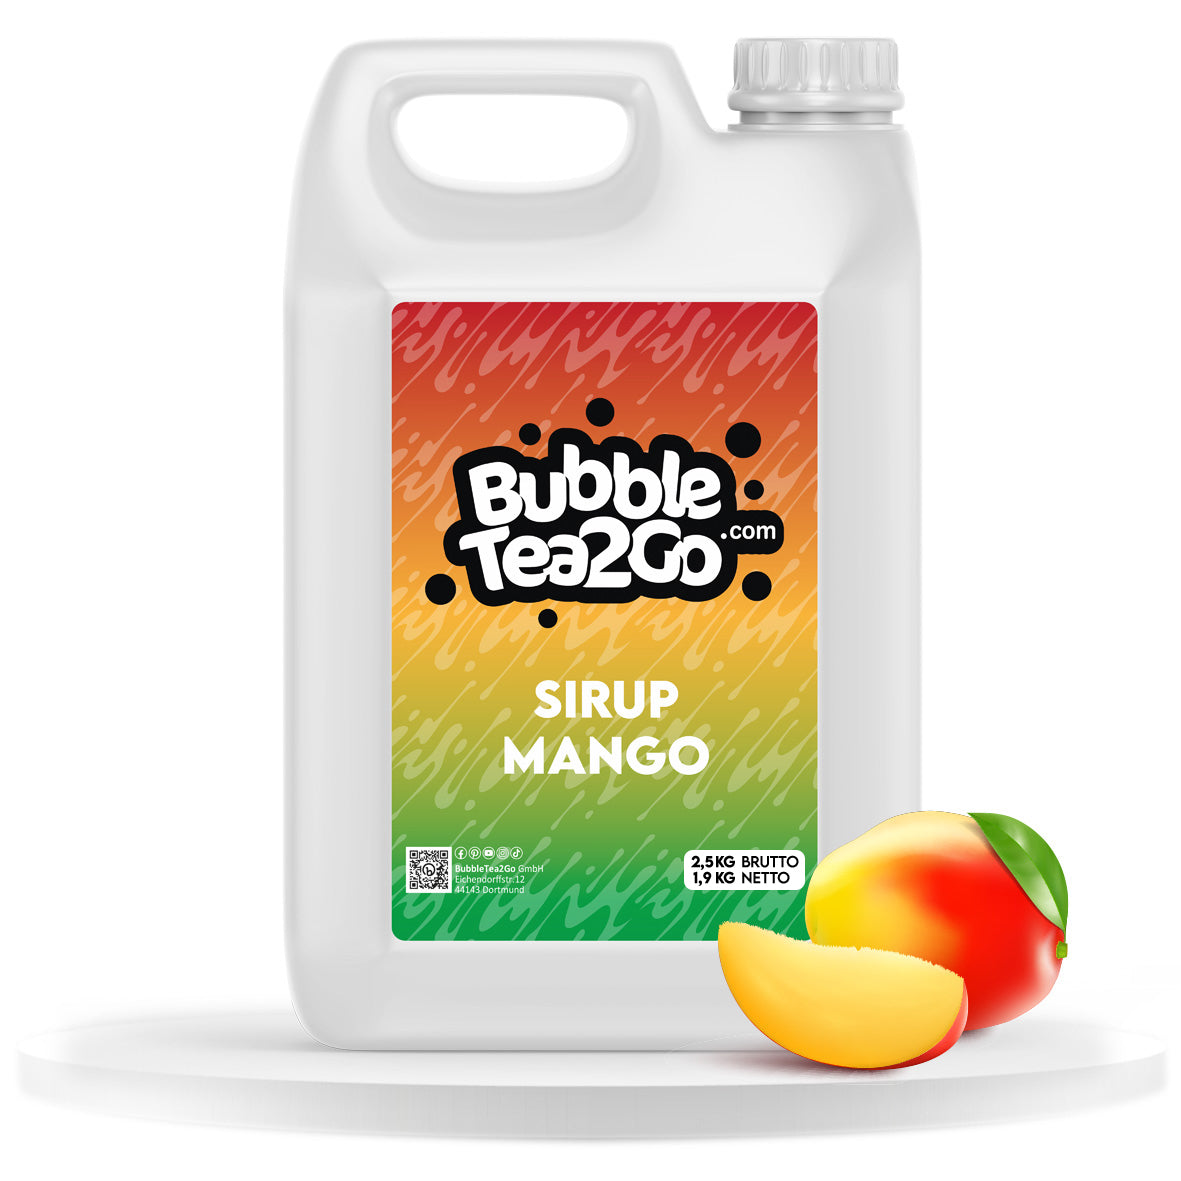 Sirup grande - Mango (1.9L)